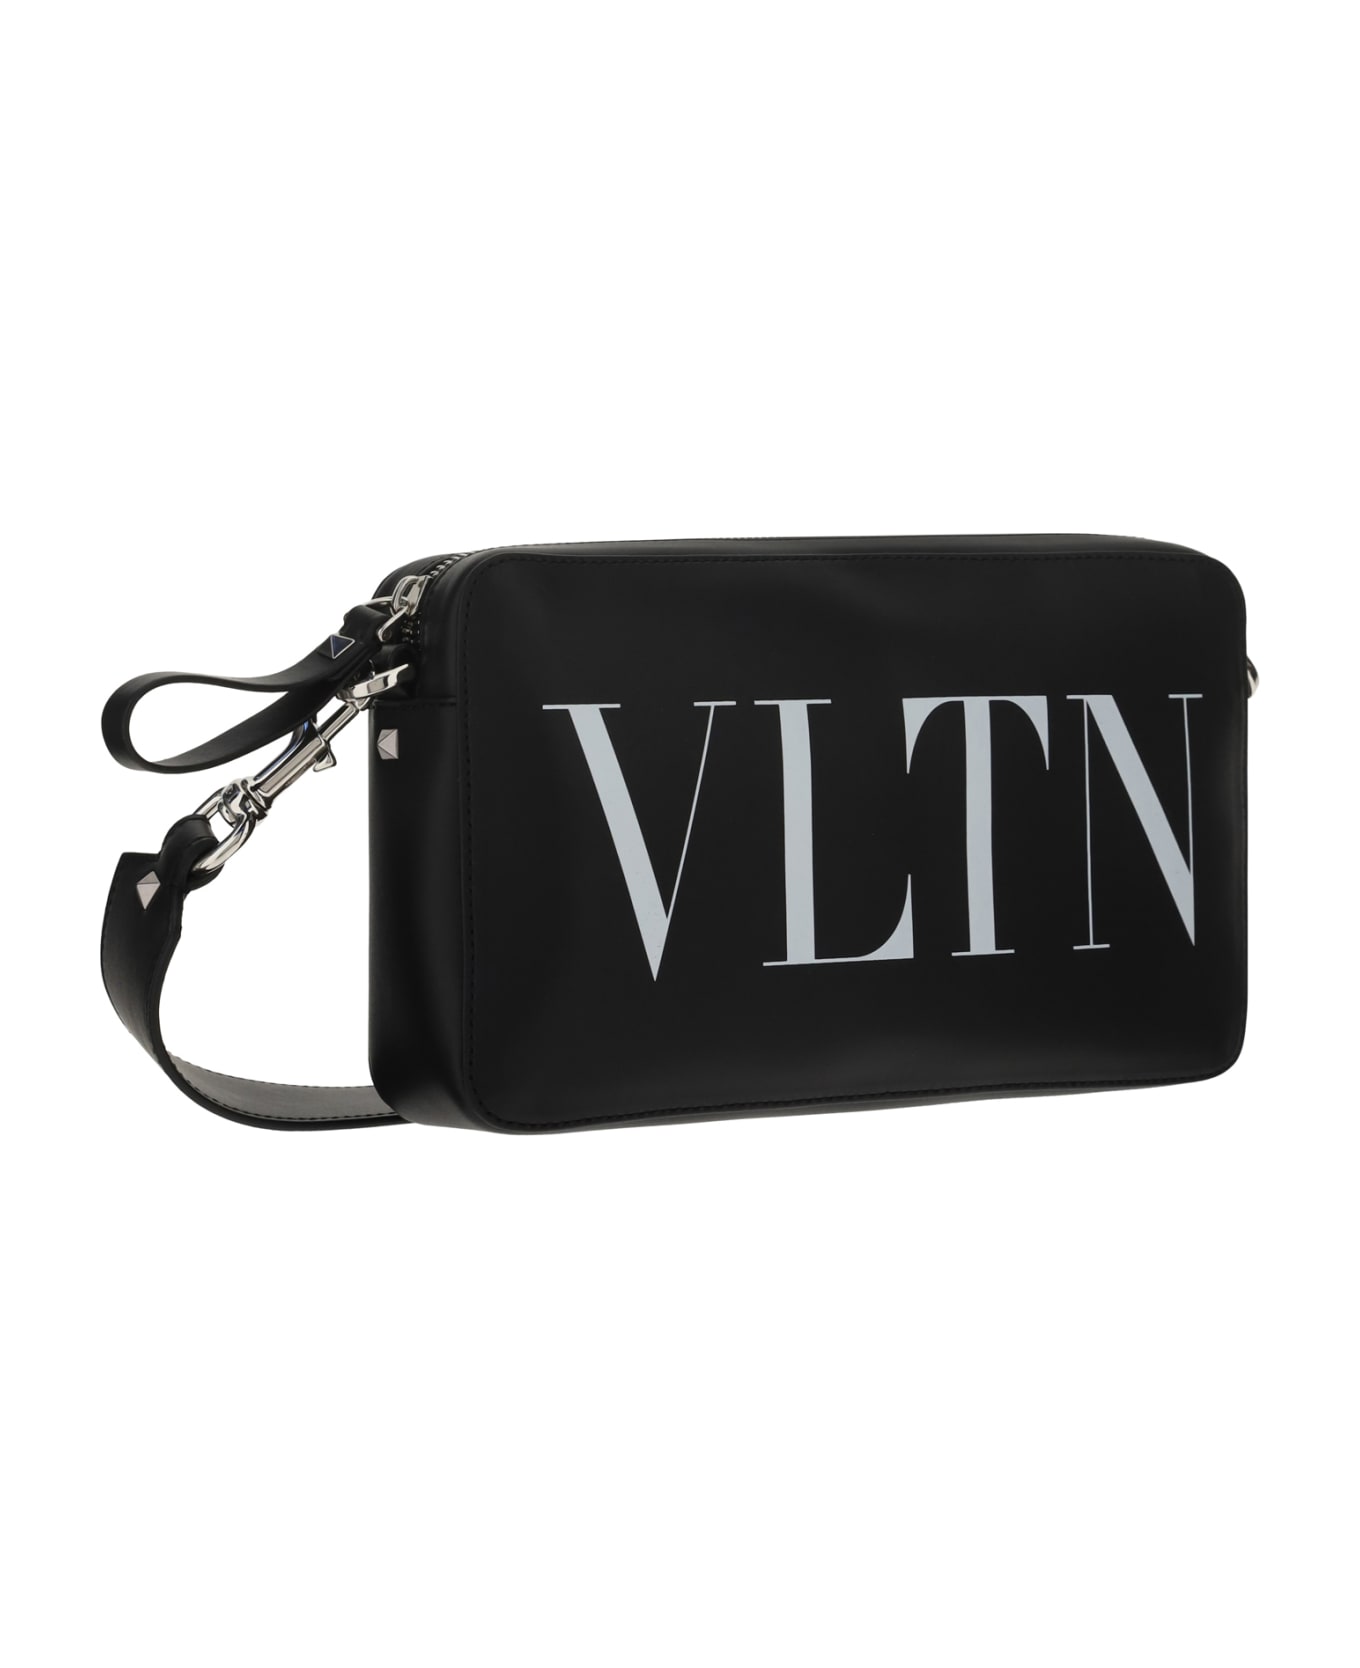 Valentino Garavani 'vltn' Shoulder Bag - Nero/bianco ショルダーバッグ